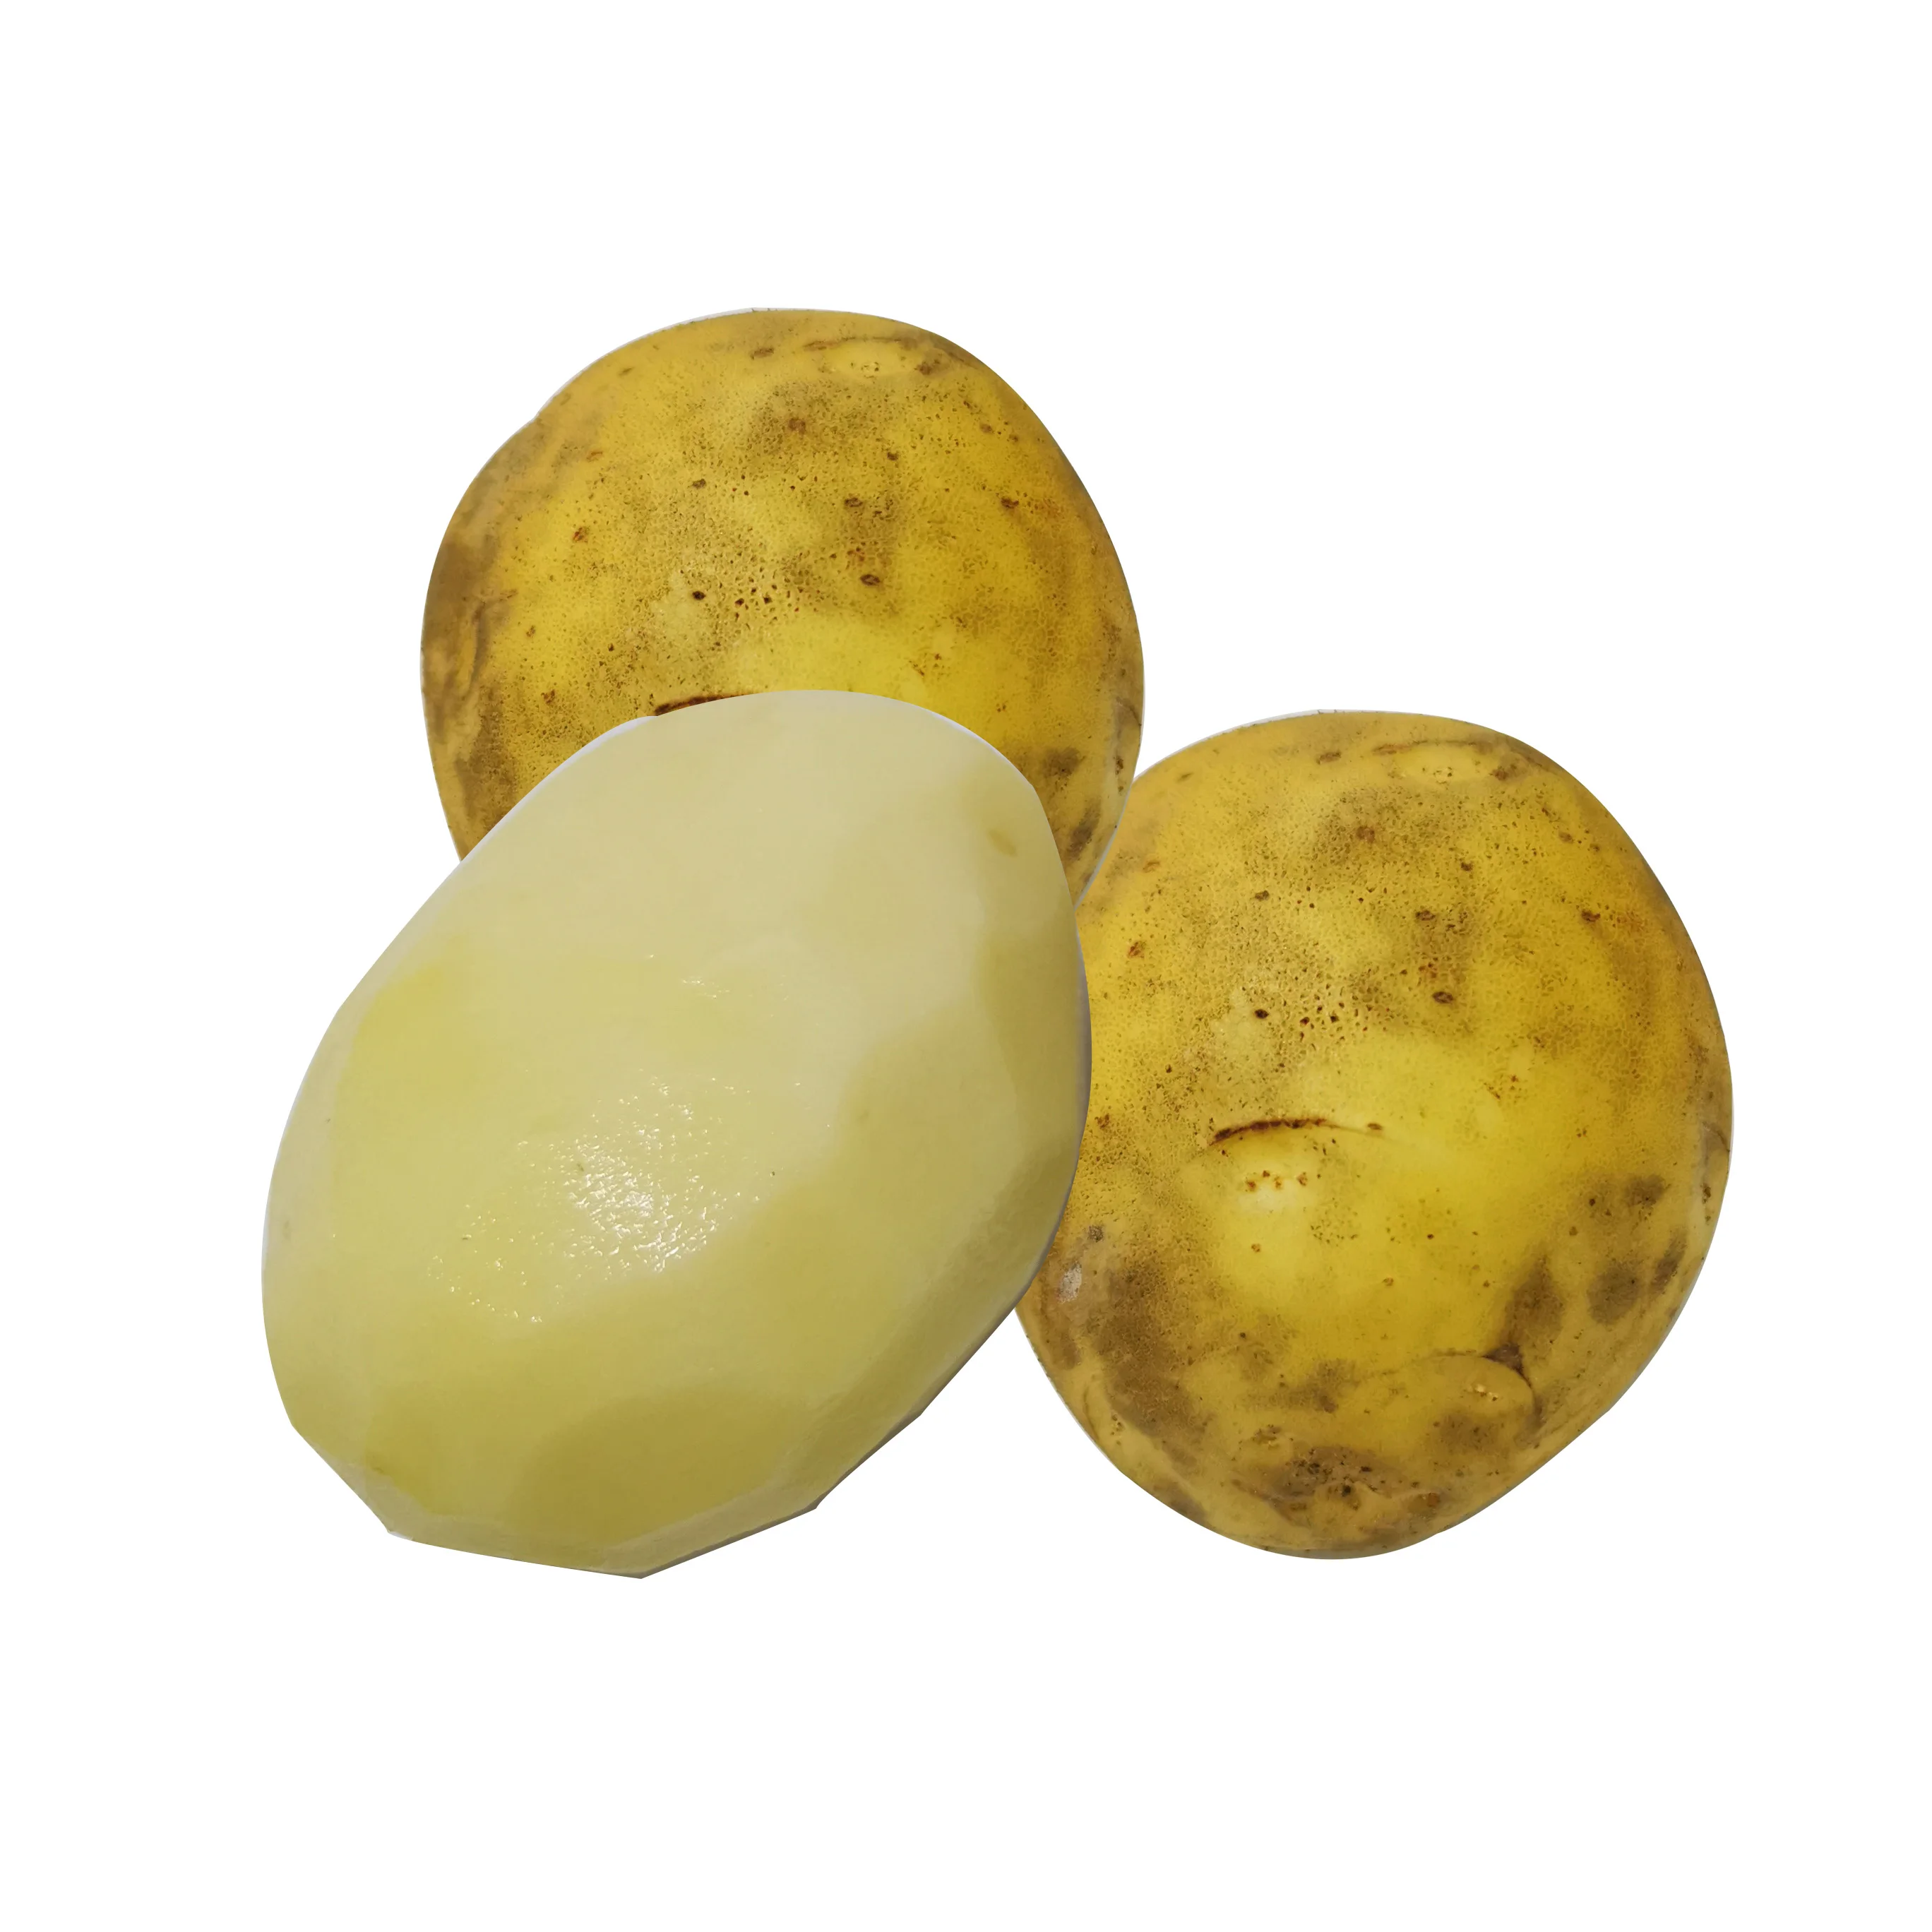 Дешевый органический свежий картофель желтого цвета оптом экспорт картофеля (1600400251489)